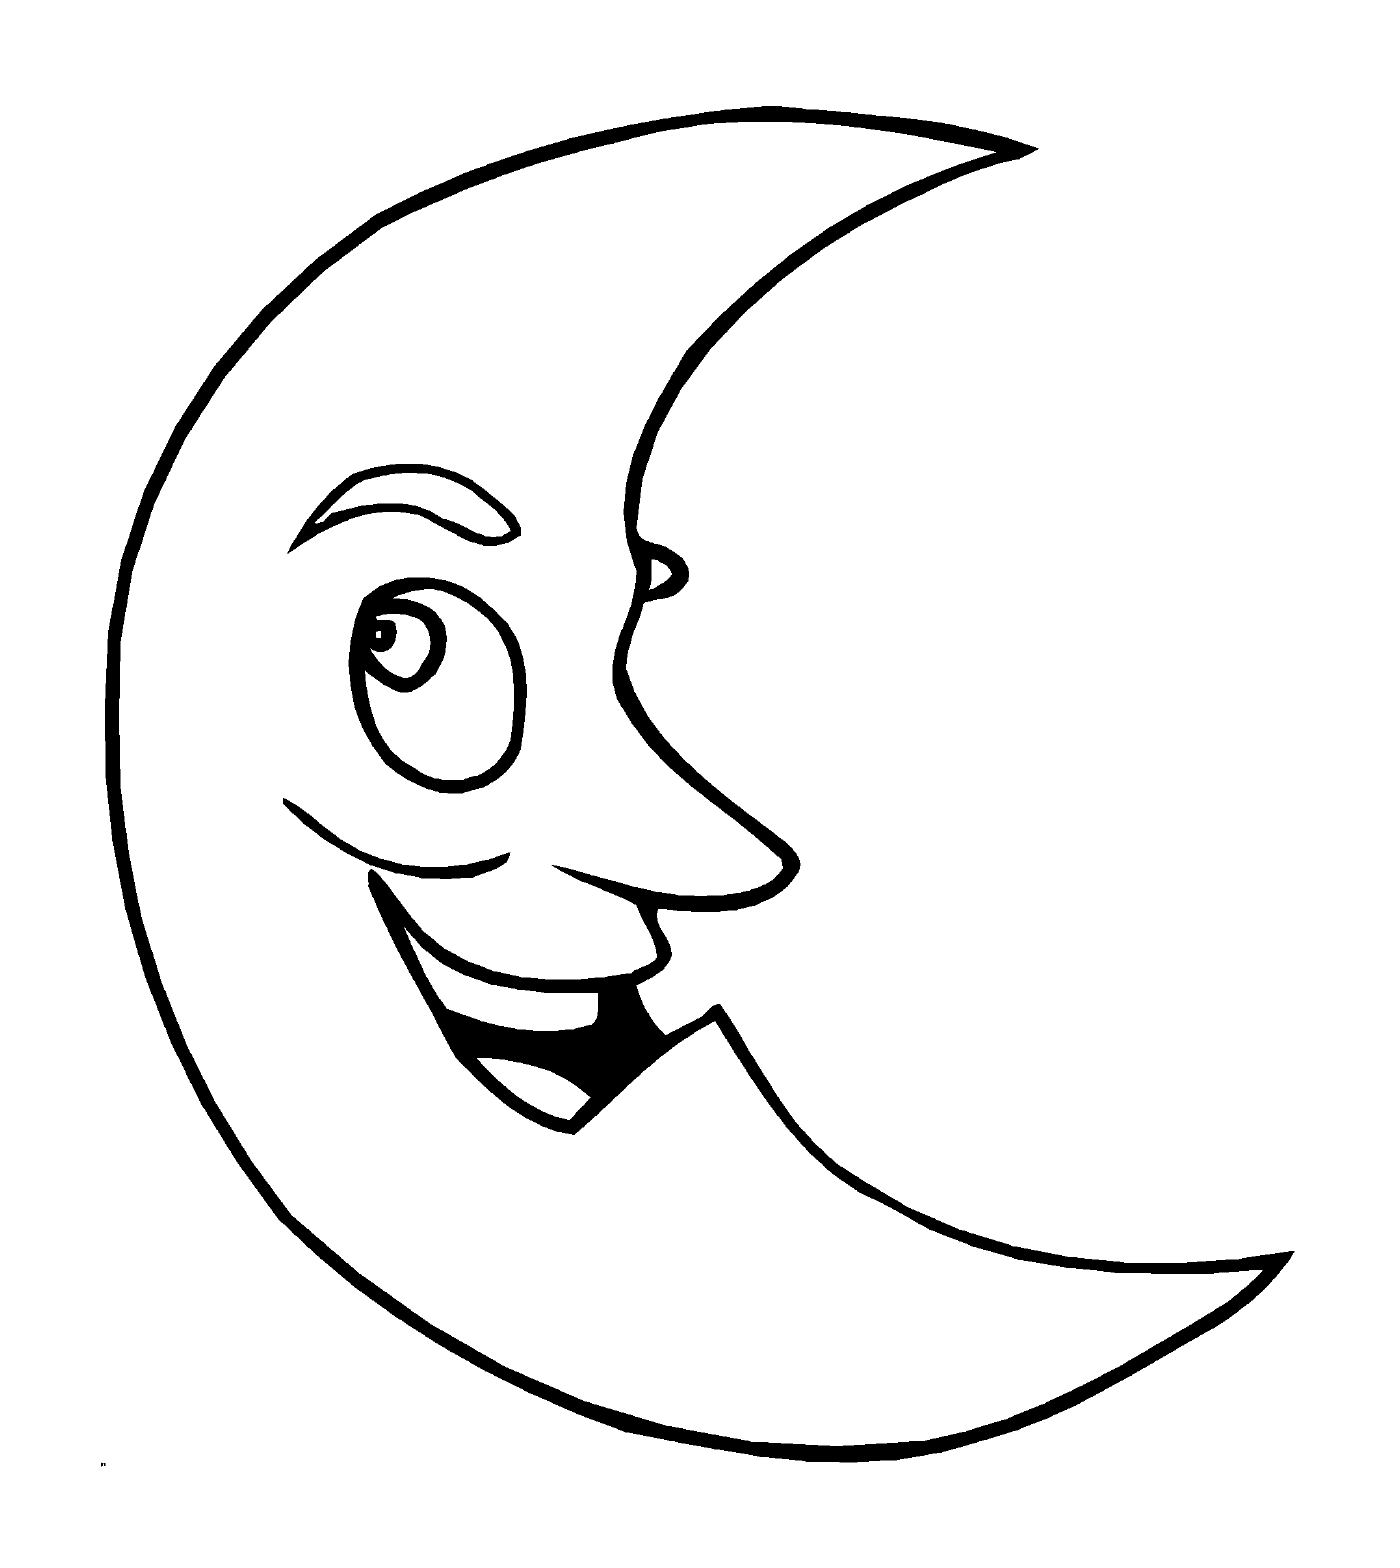  Mond mit einem lächelnden Gesicht 